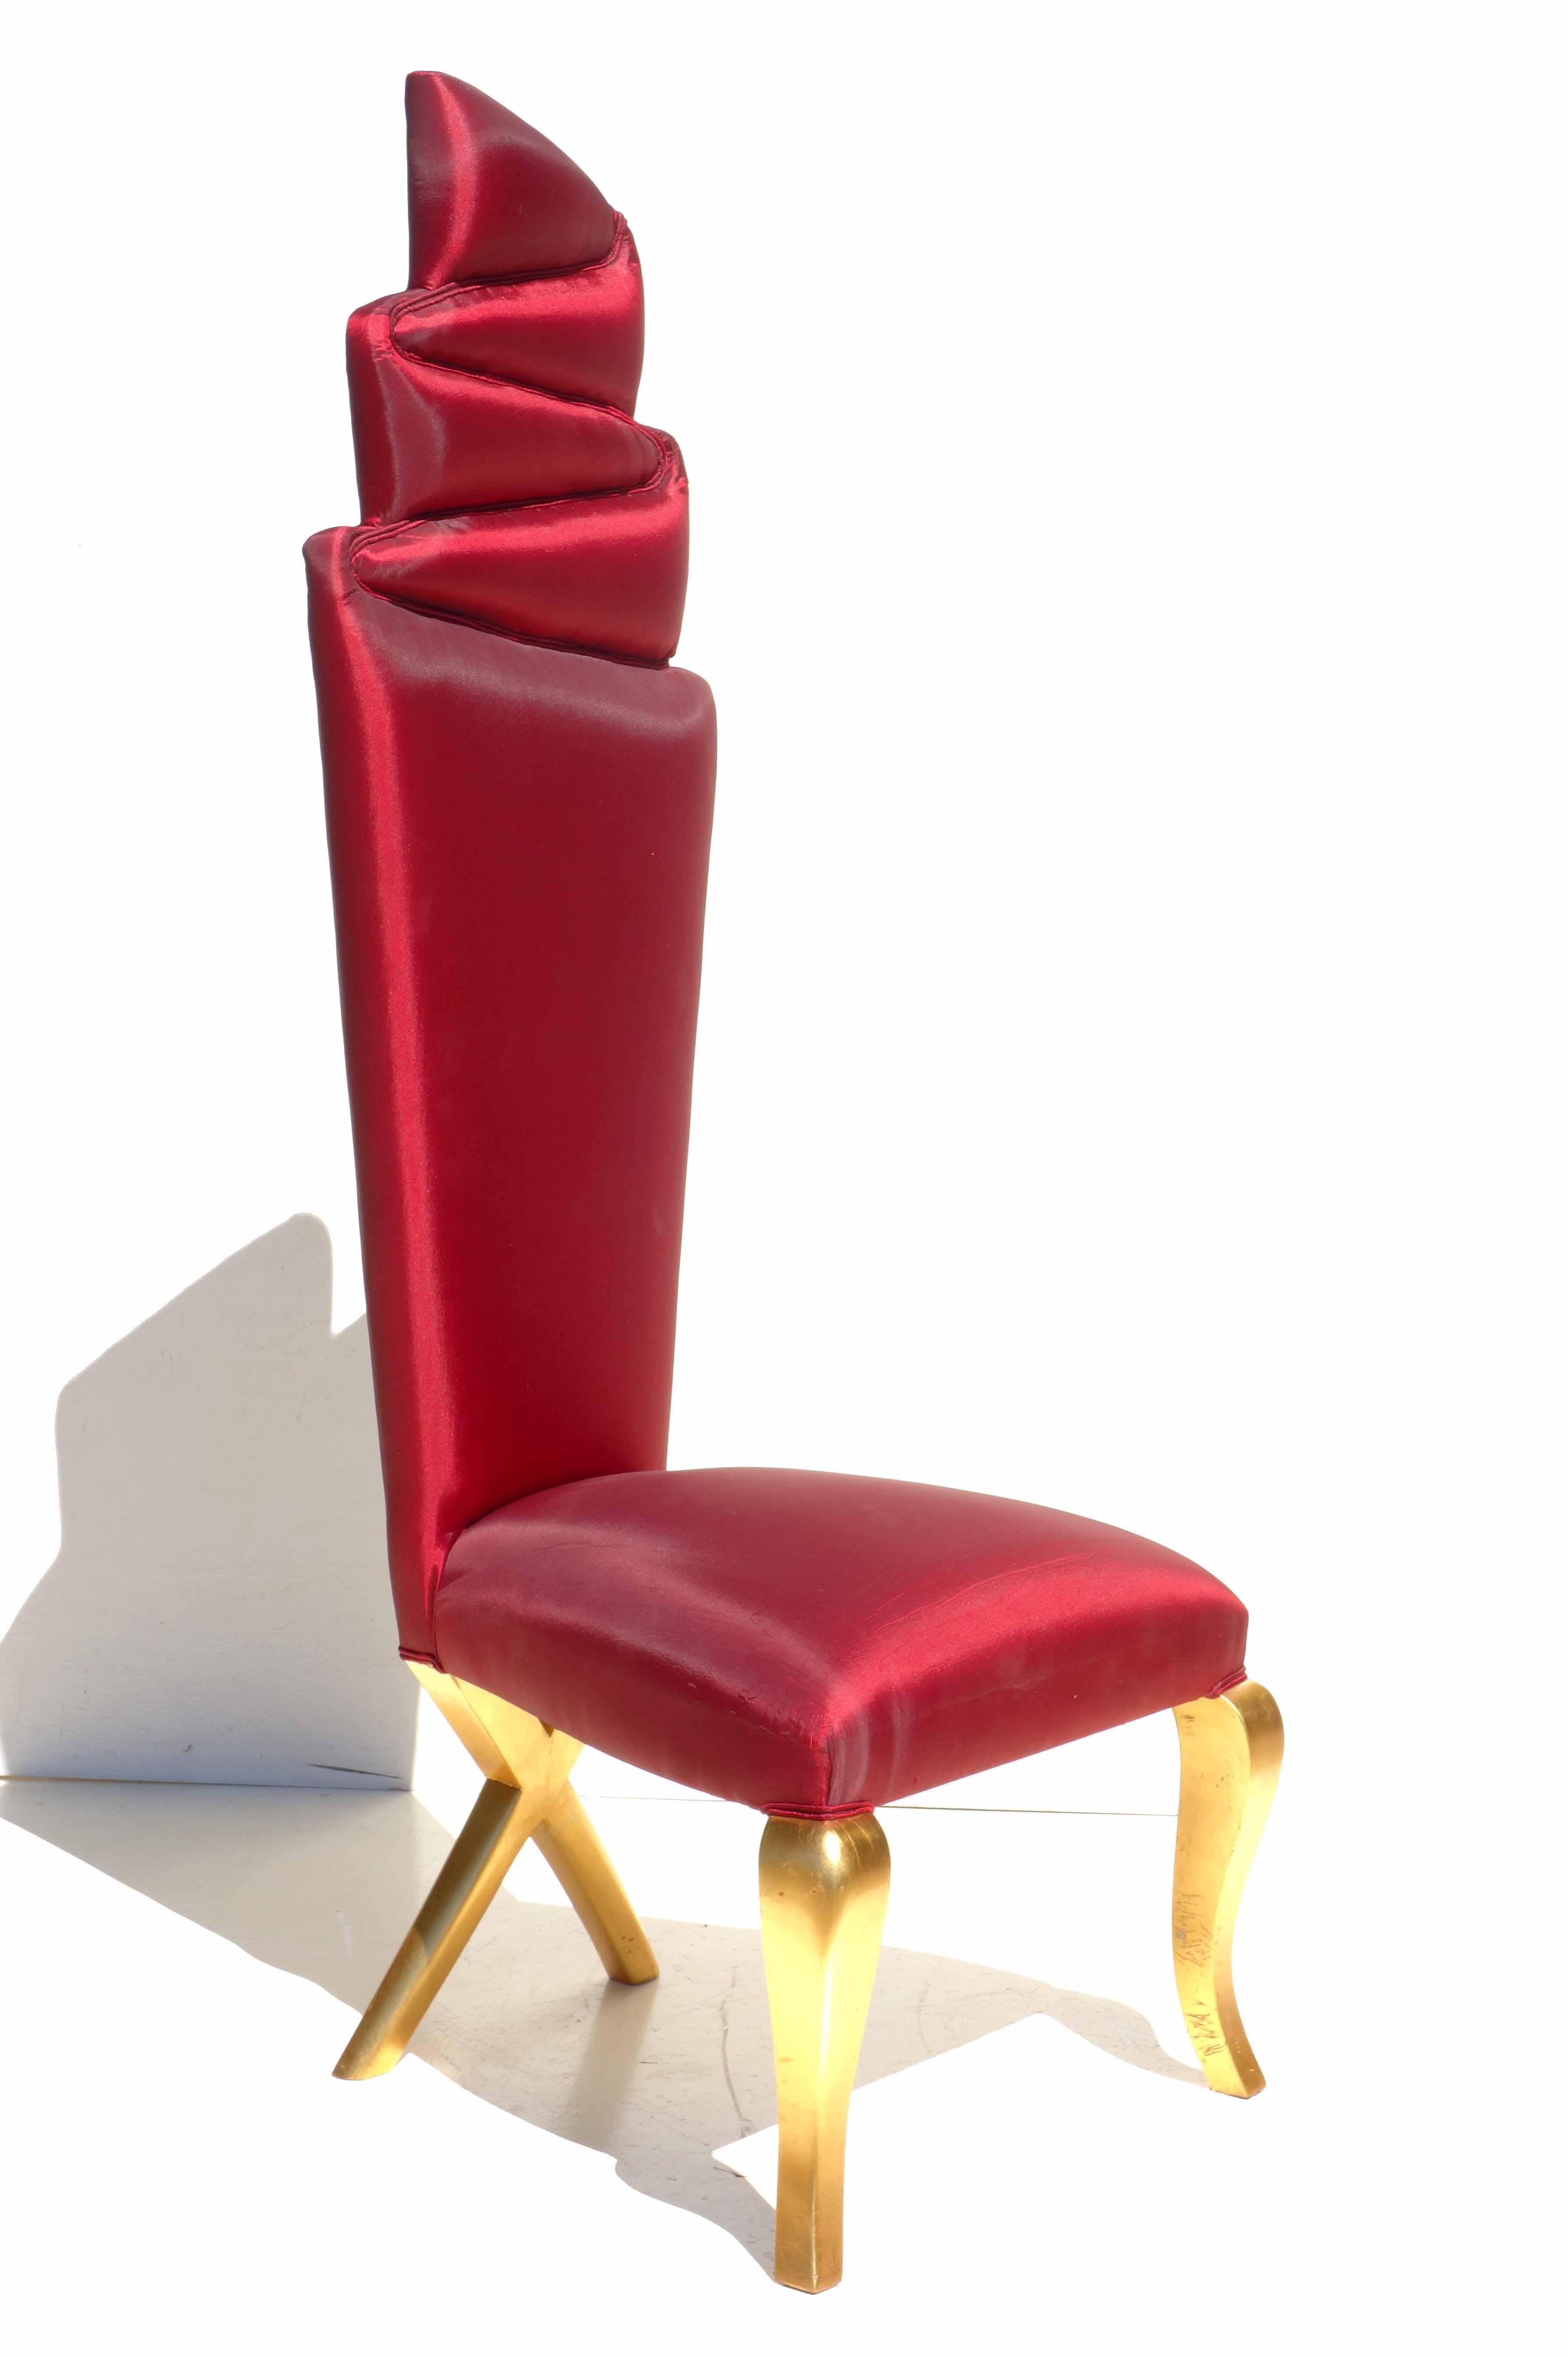 Seltenes Paar Stühle.
Vergoldeter Holzrahmen und rote Seidenpolsterung.
Sehr gute Beschaffenheit.